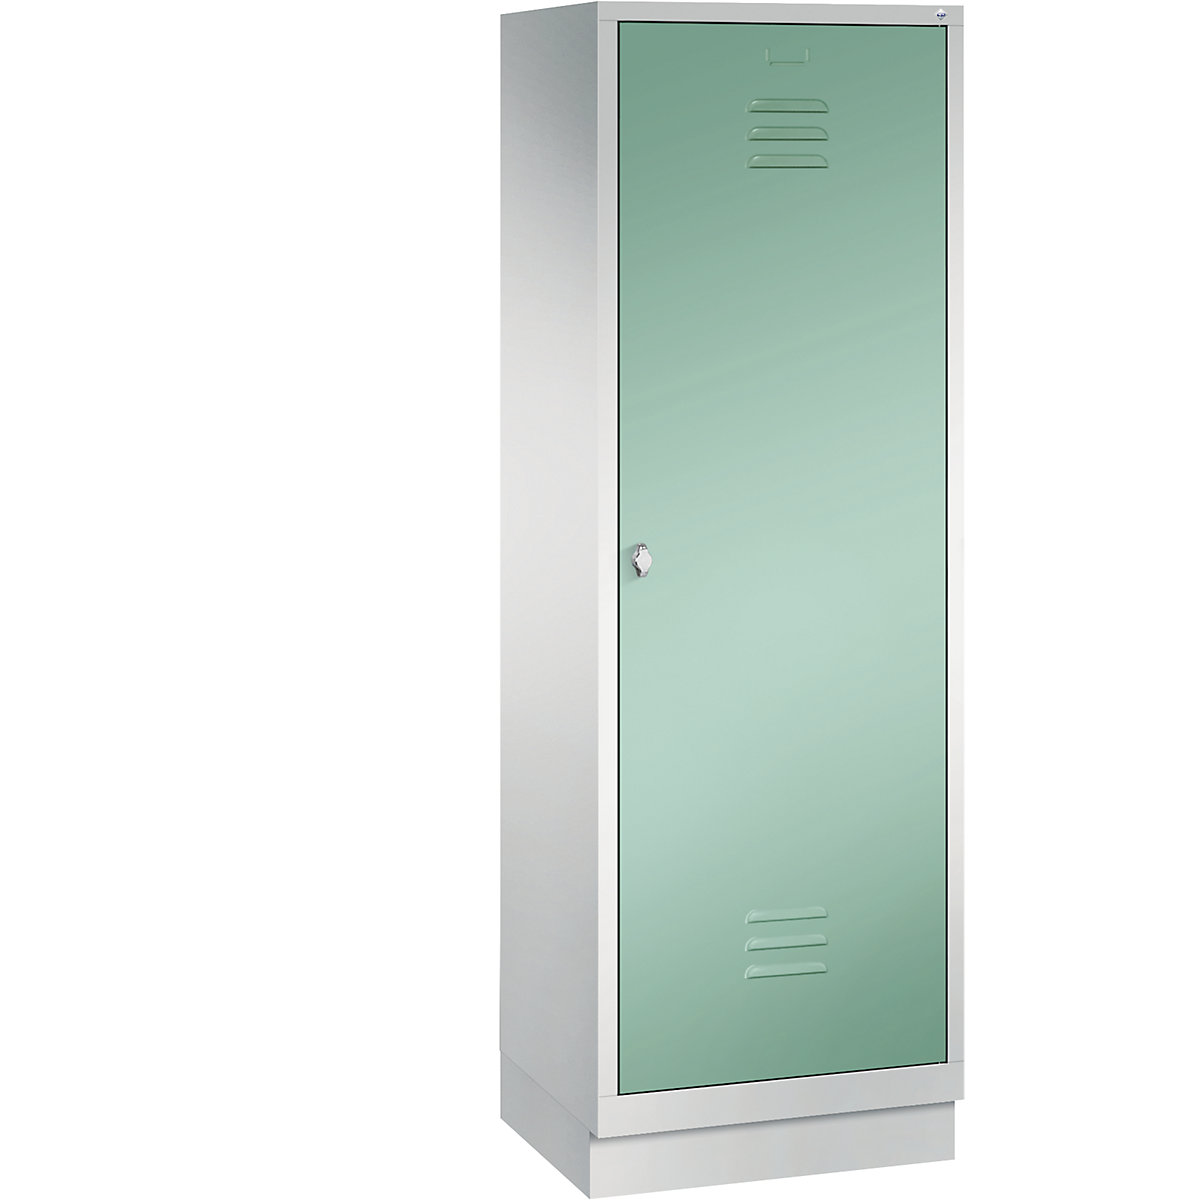 Šatní skříň se soklem CLASSIC s dveřmi přes 2 oddíly – C+P, 2 oddíly, šířka oddílu 300 mm, světlá šedá / světlá zelená